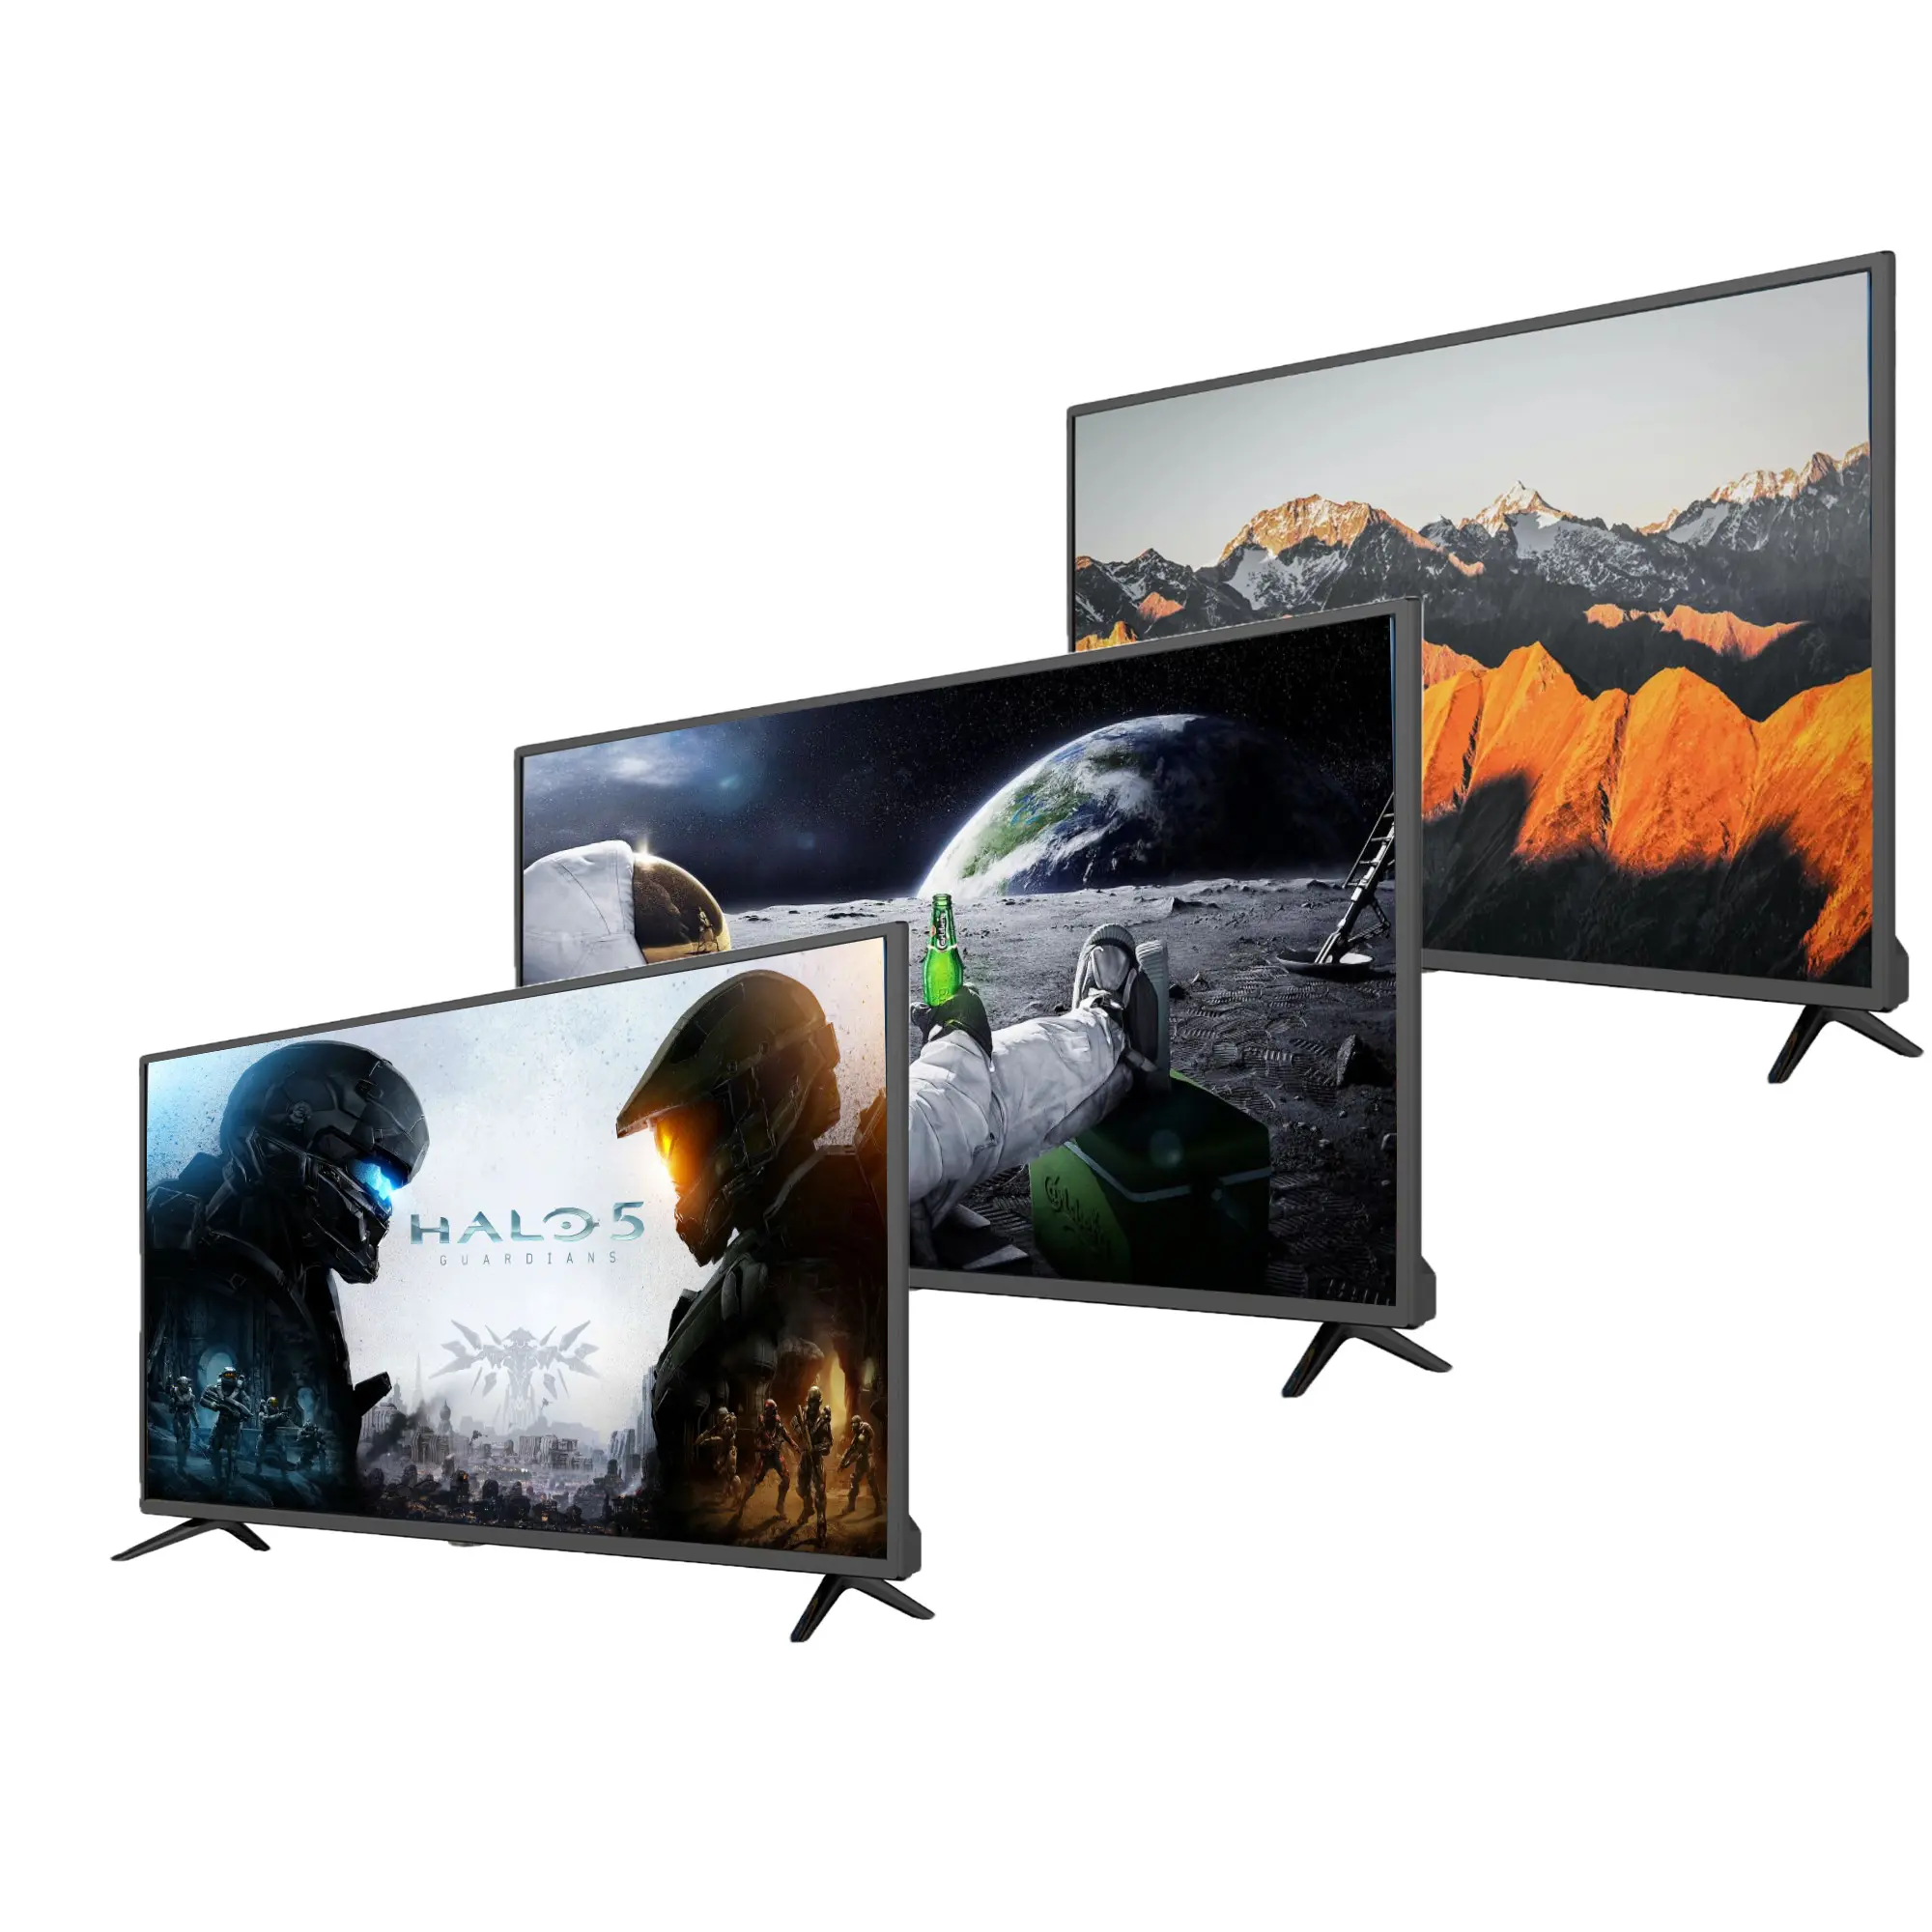 תושבת לטלוויזיה LED לקיר 19 אינץ' 22 אינץ' 24 אינץ' 32 אינץ' מסך LCD טלוויזיה טוב DVB-T2 תמיכה בטלוויזיה חכמה התאמה אישית OEM סיטונאי